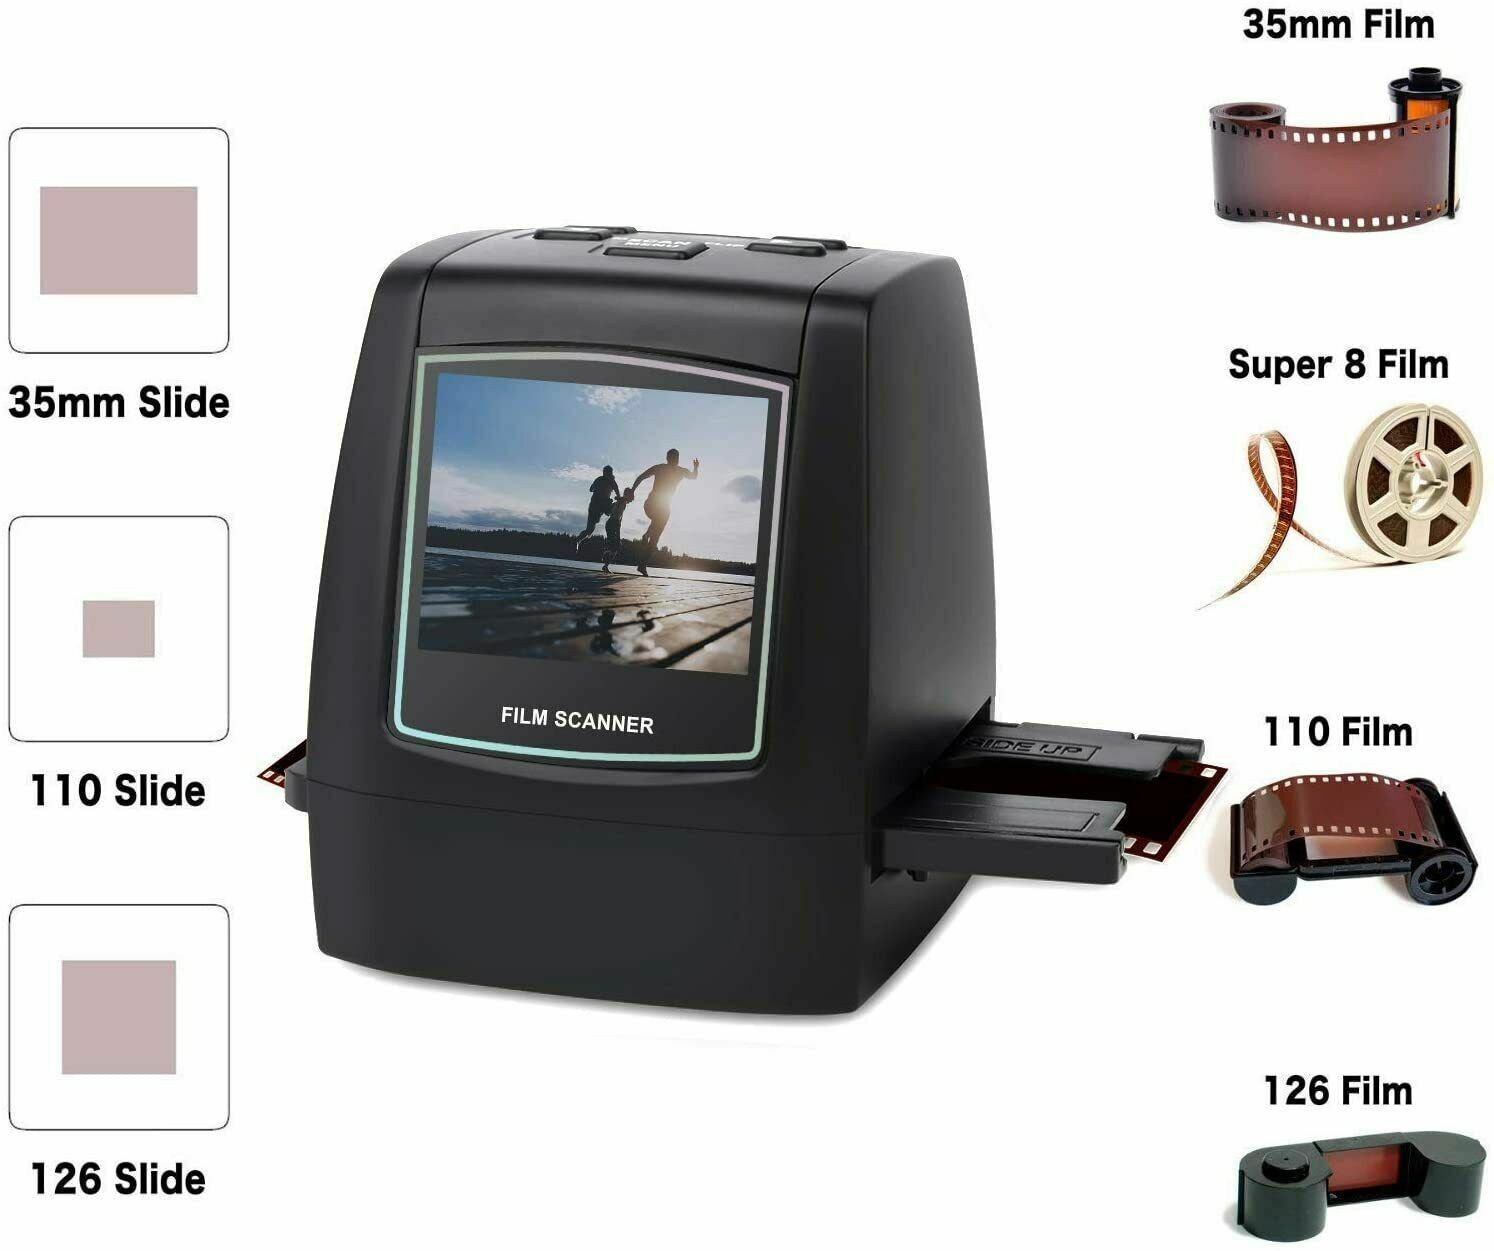 22MP All-in-1 Film & Slide Scanner, Converts Films/Slides/Negatives to Digital